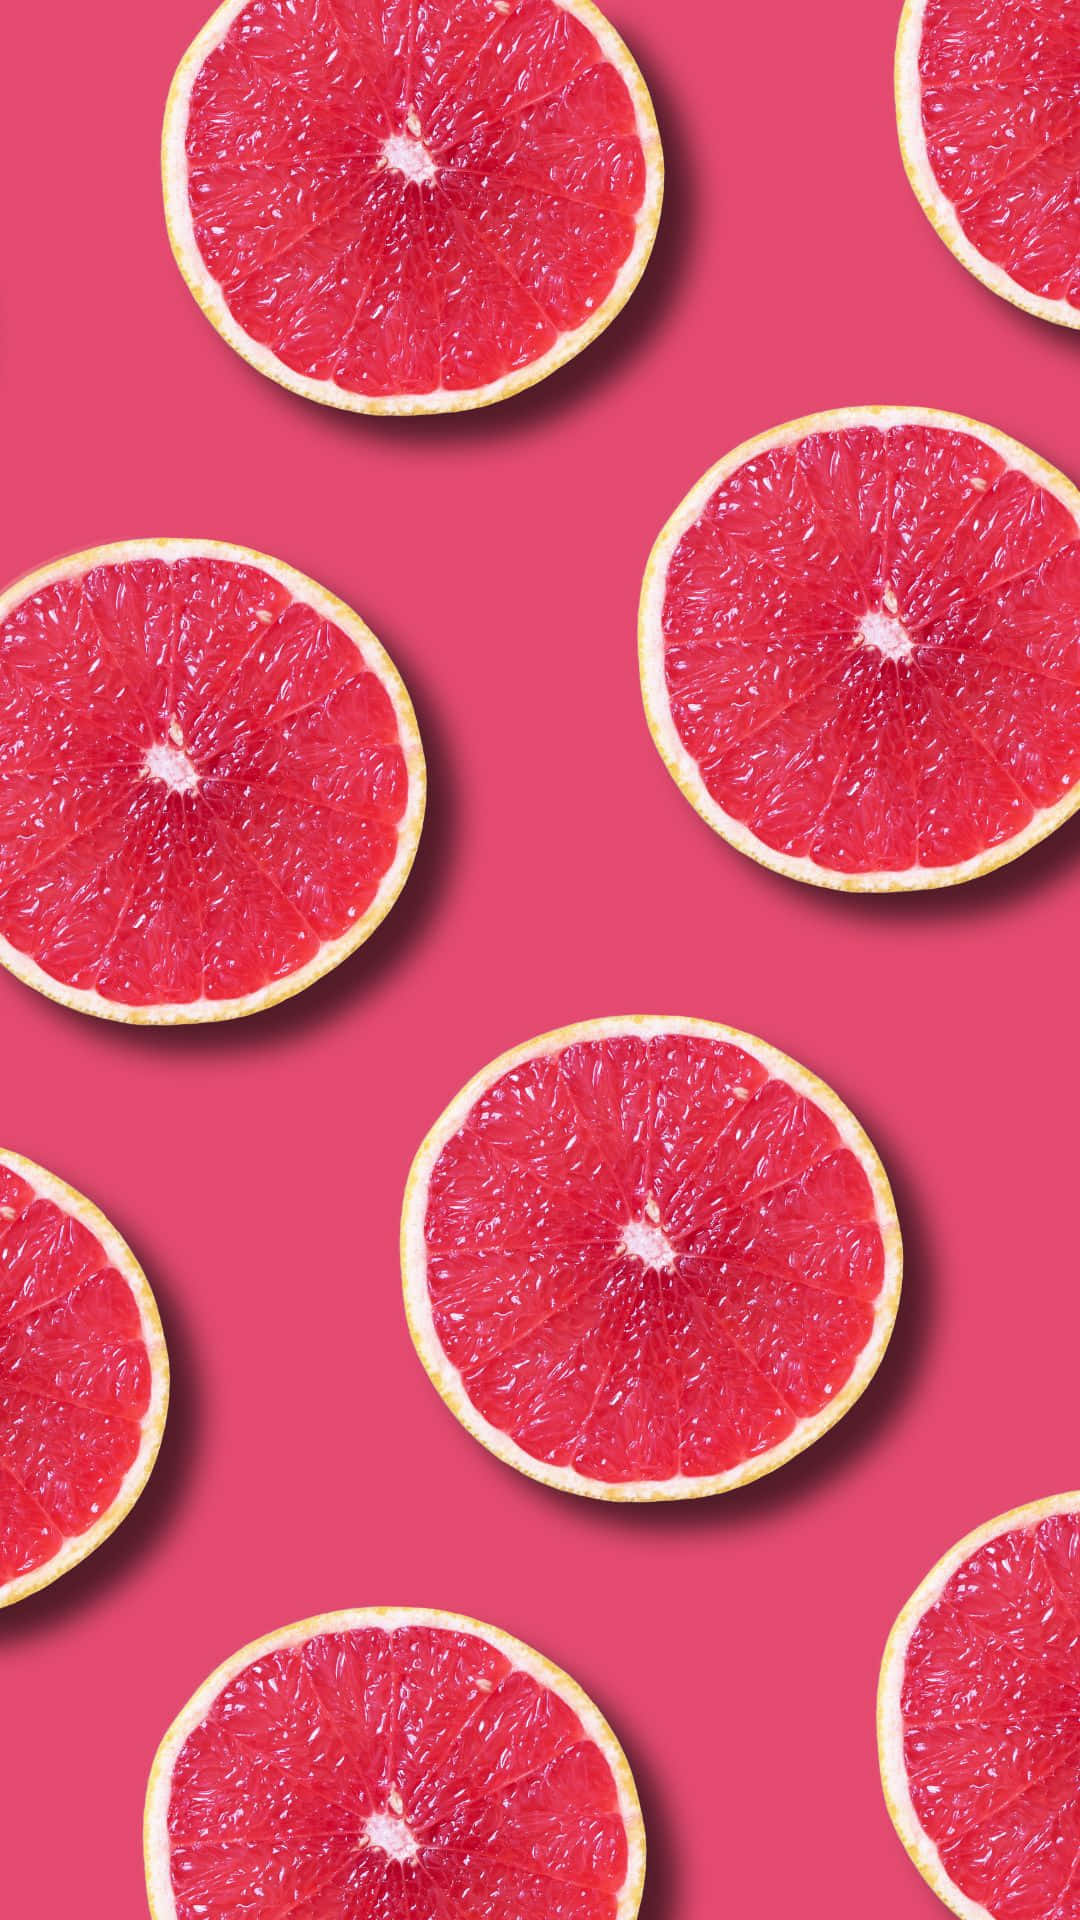 Einmuster Von Grapefruitscheiben Auf Einem Rosafarbenen Hintergrund.